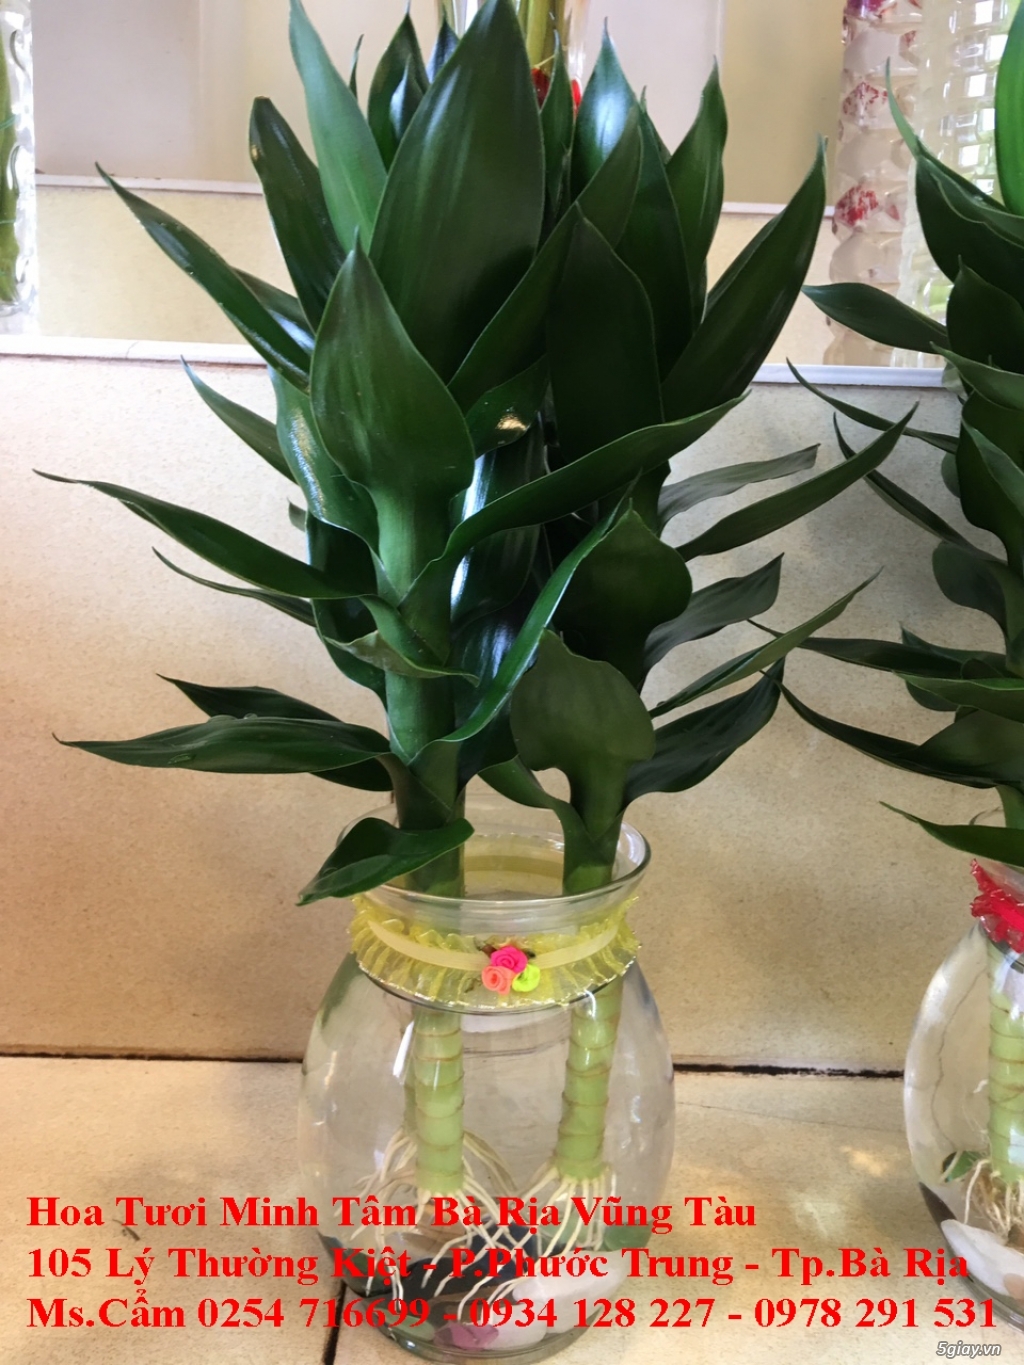 Hoa Tươi Minh Tam - Chuyên cung cấp hoa tươi đẹp nhất